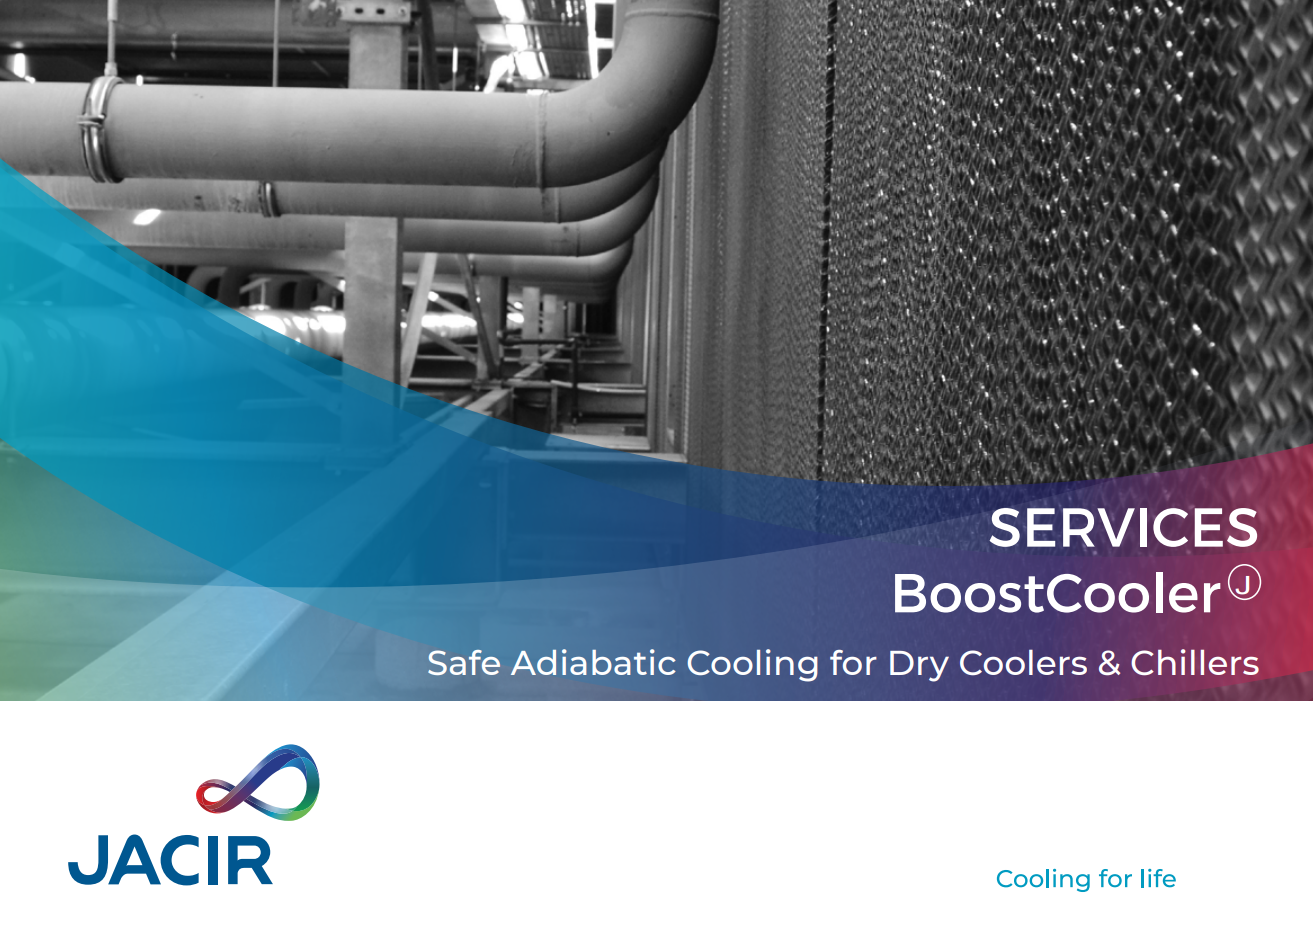 BoostCooler safe adiabatisation system for drys coolers & chillers